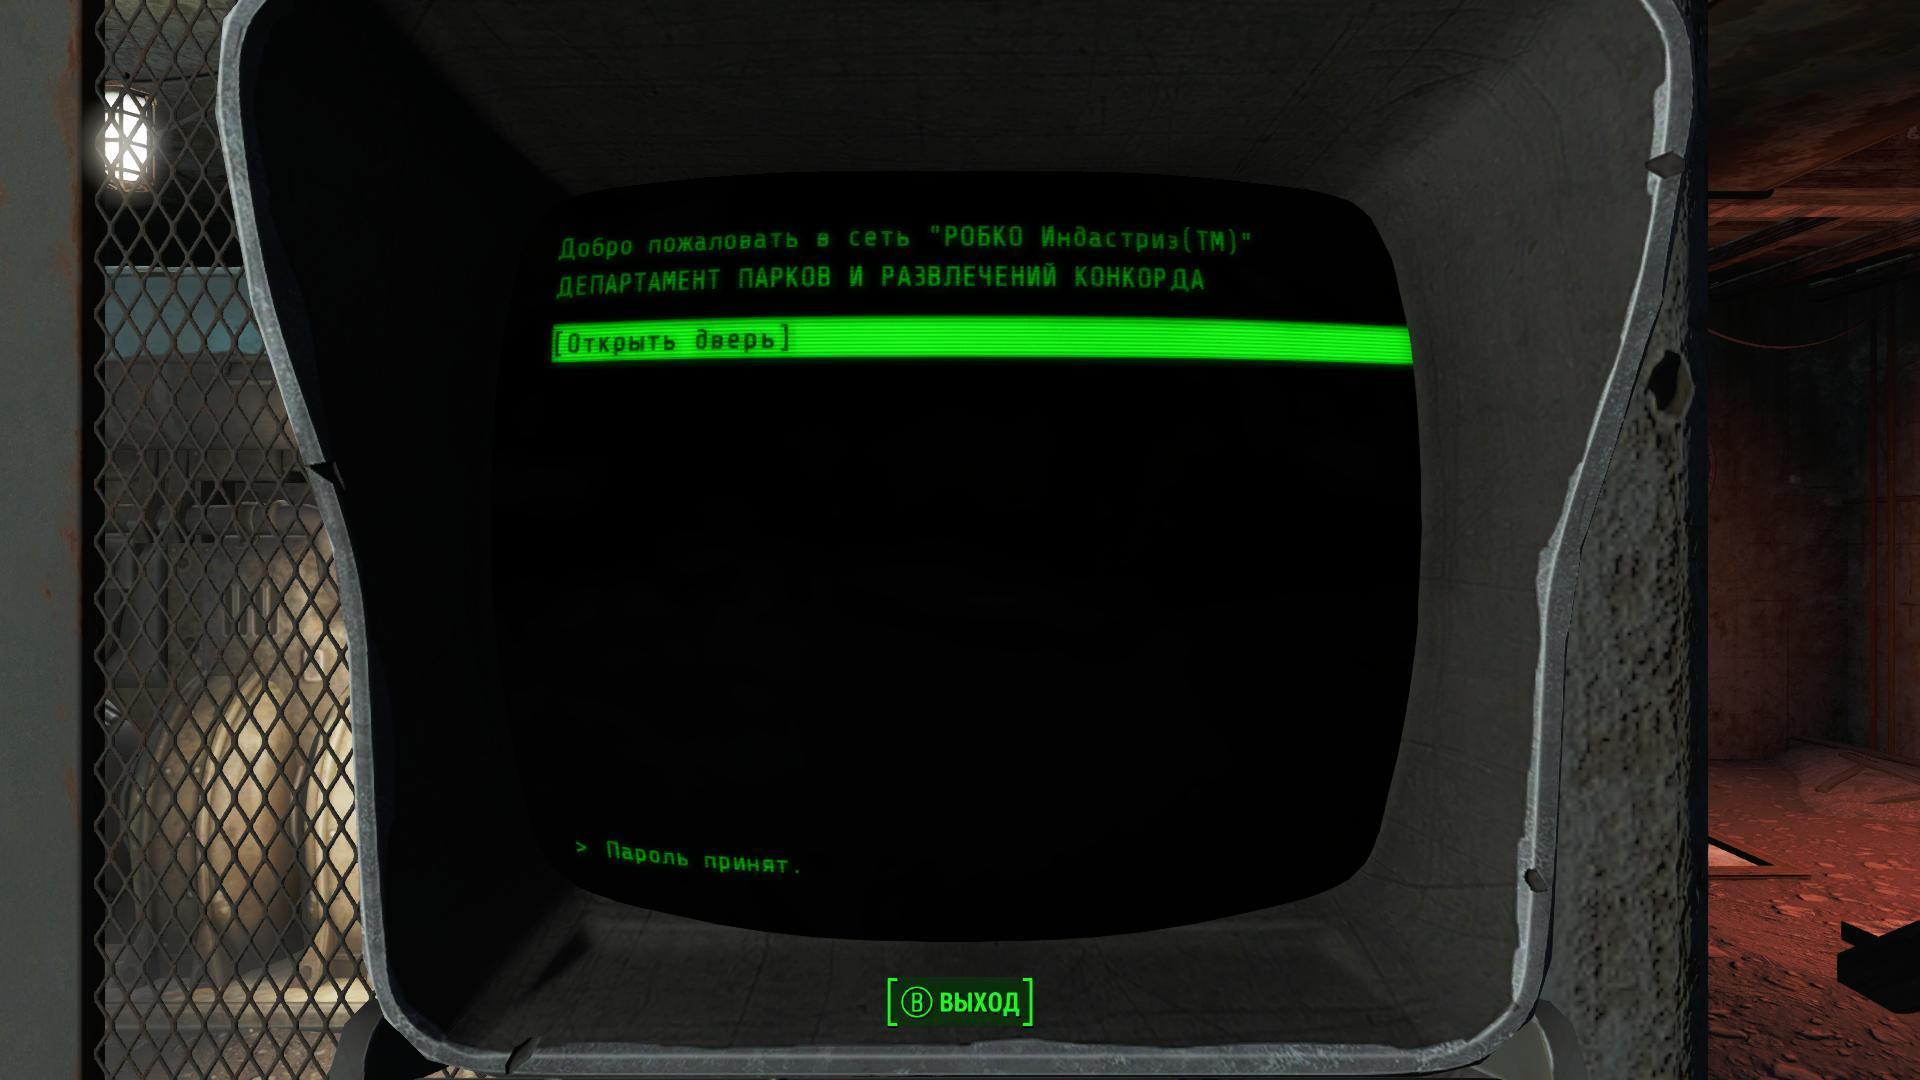 пароль в сети робко в fallout 4 (116) фото